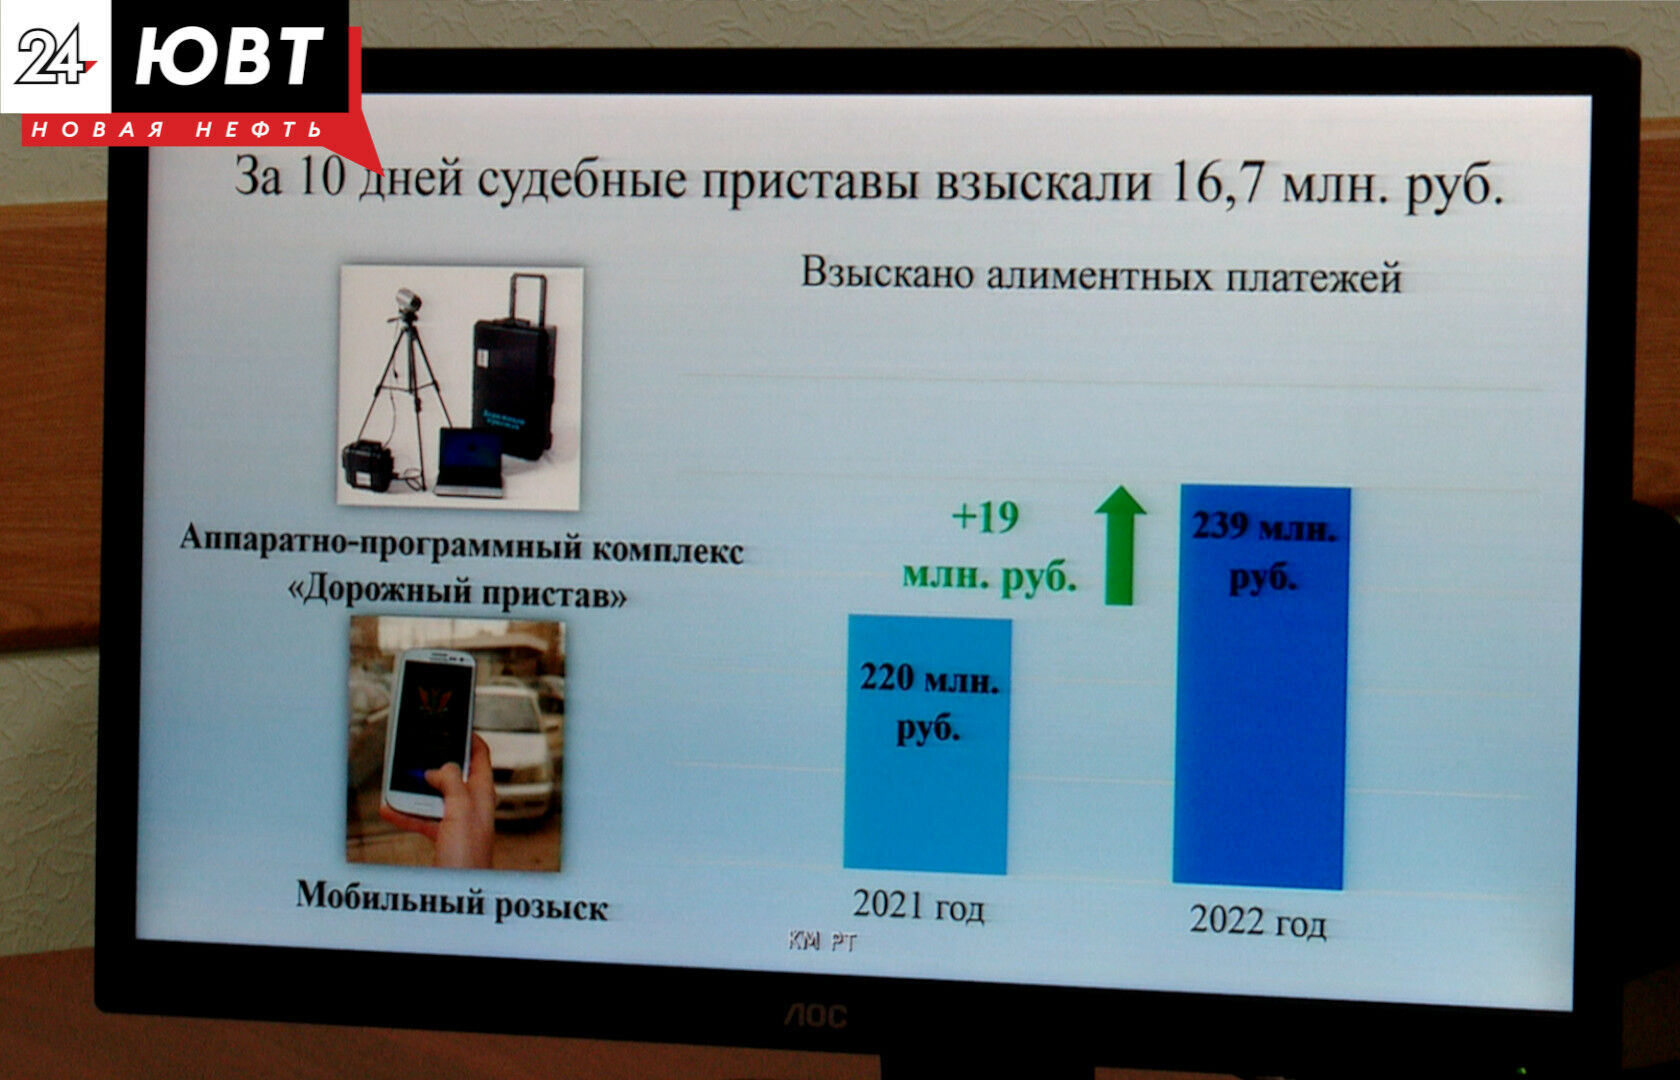 В Татарстане судебные приставы за 10 дней взыскали около 17 миллионов рублей